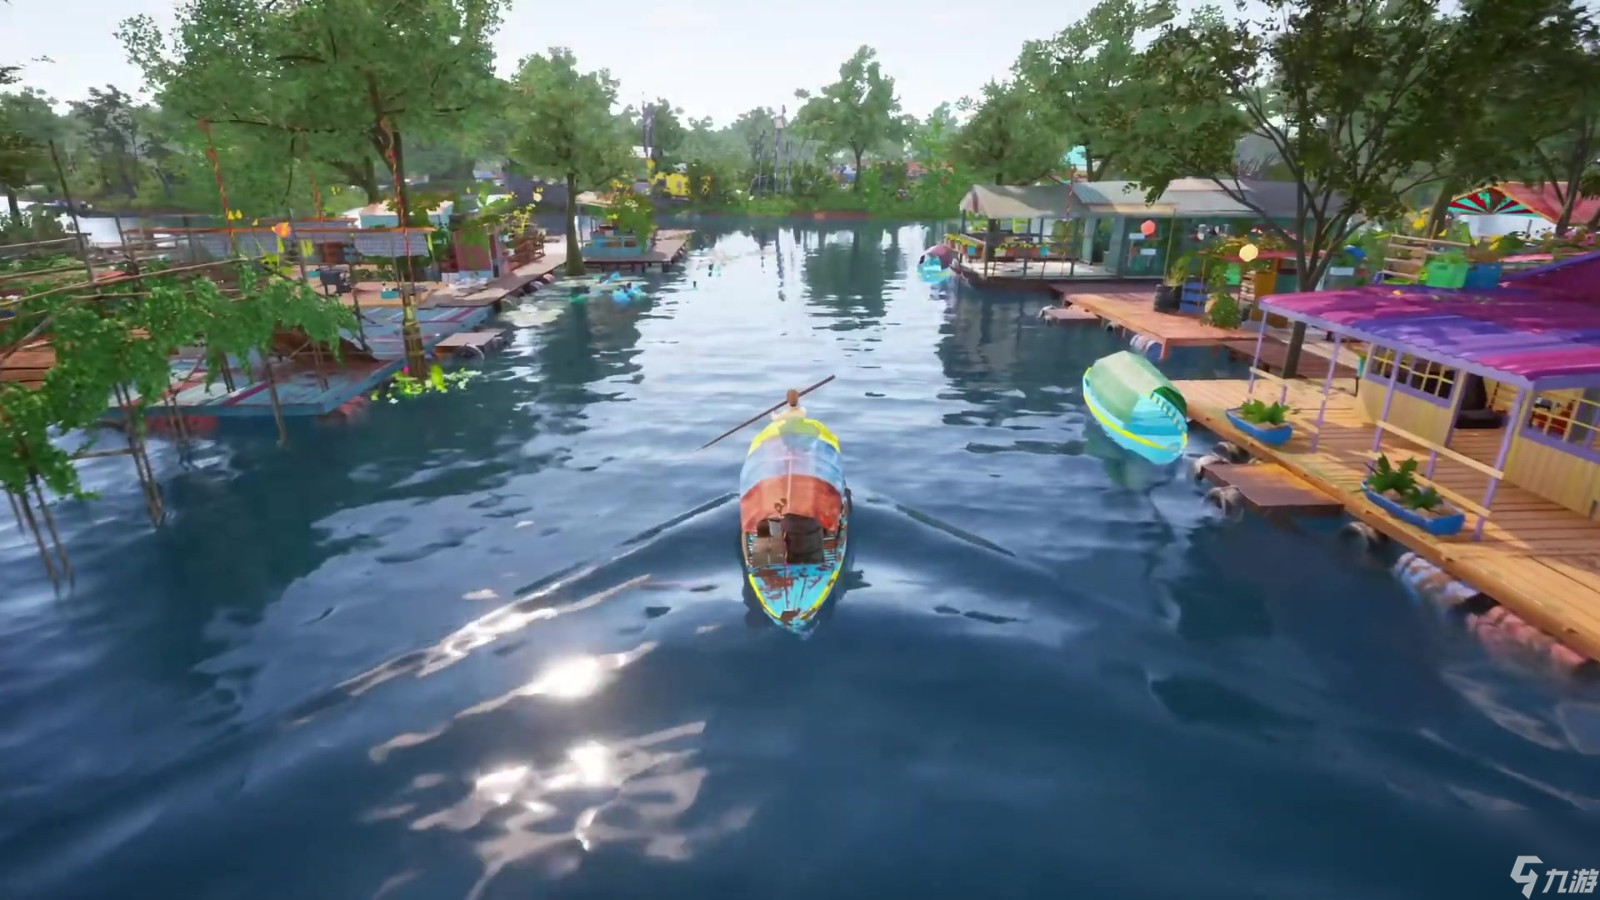 生活模拟RPG《我们的水上生活》面向PC公布